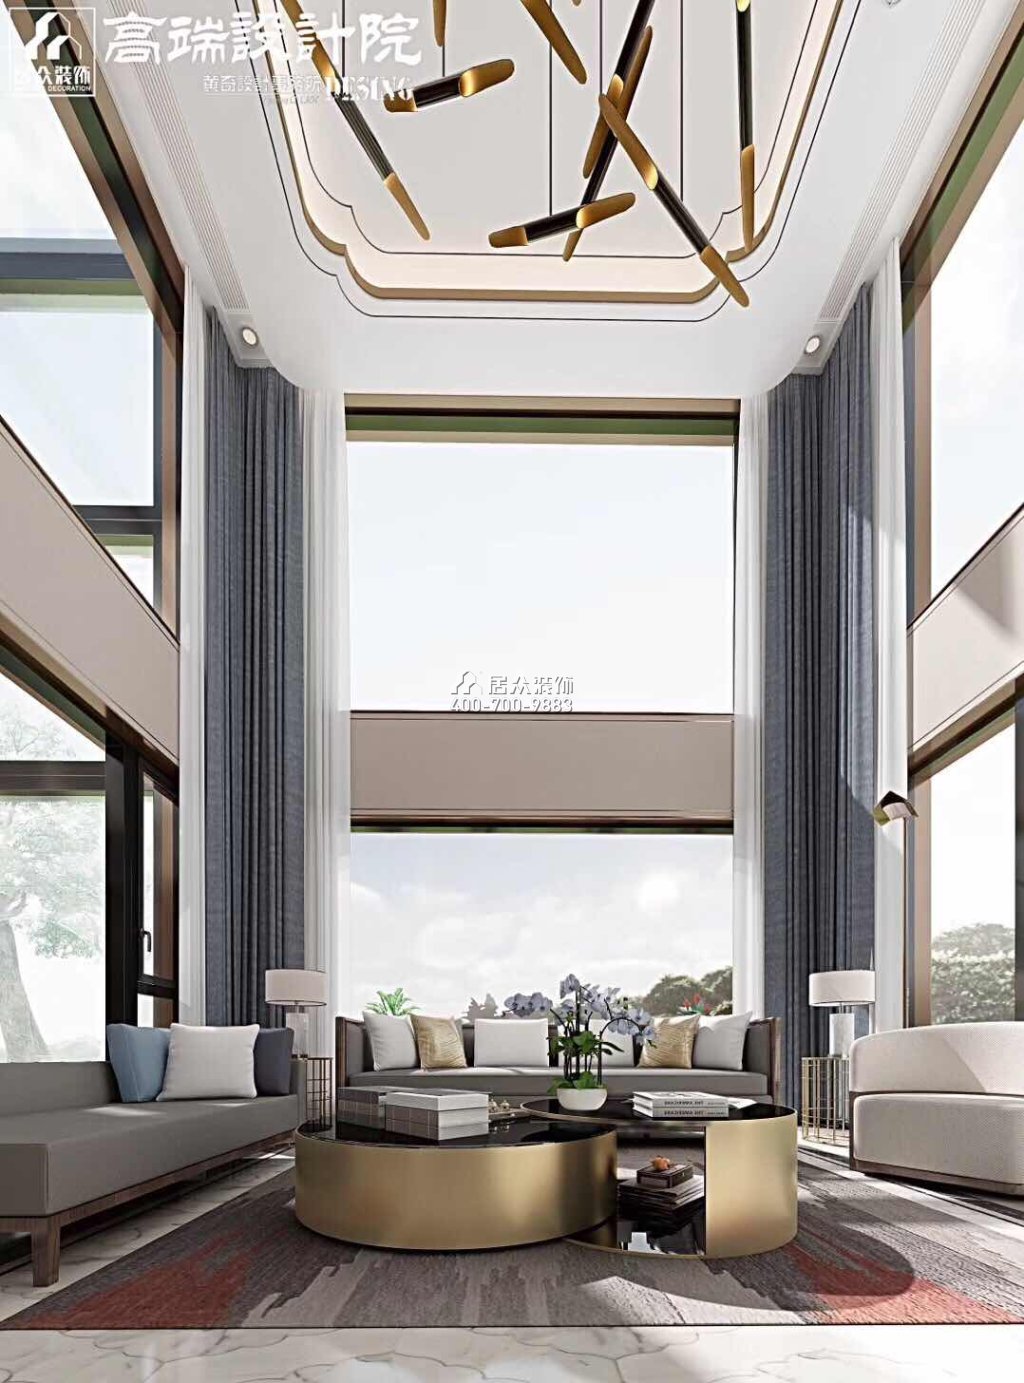 湘江一号500平方米中式风格别墅户型装修效果图